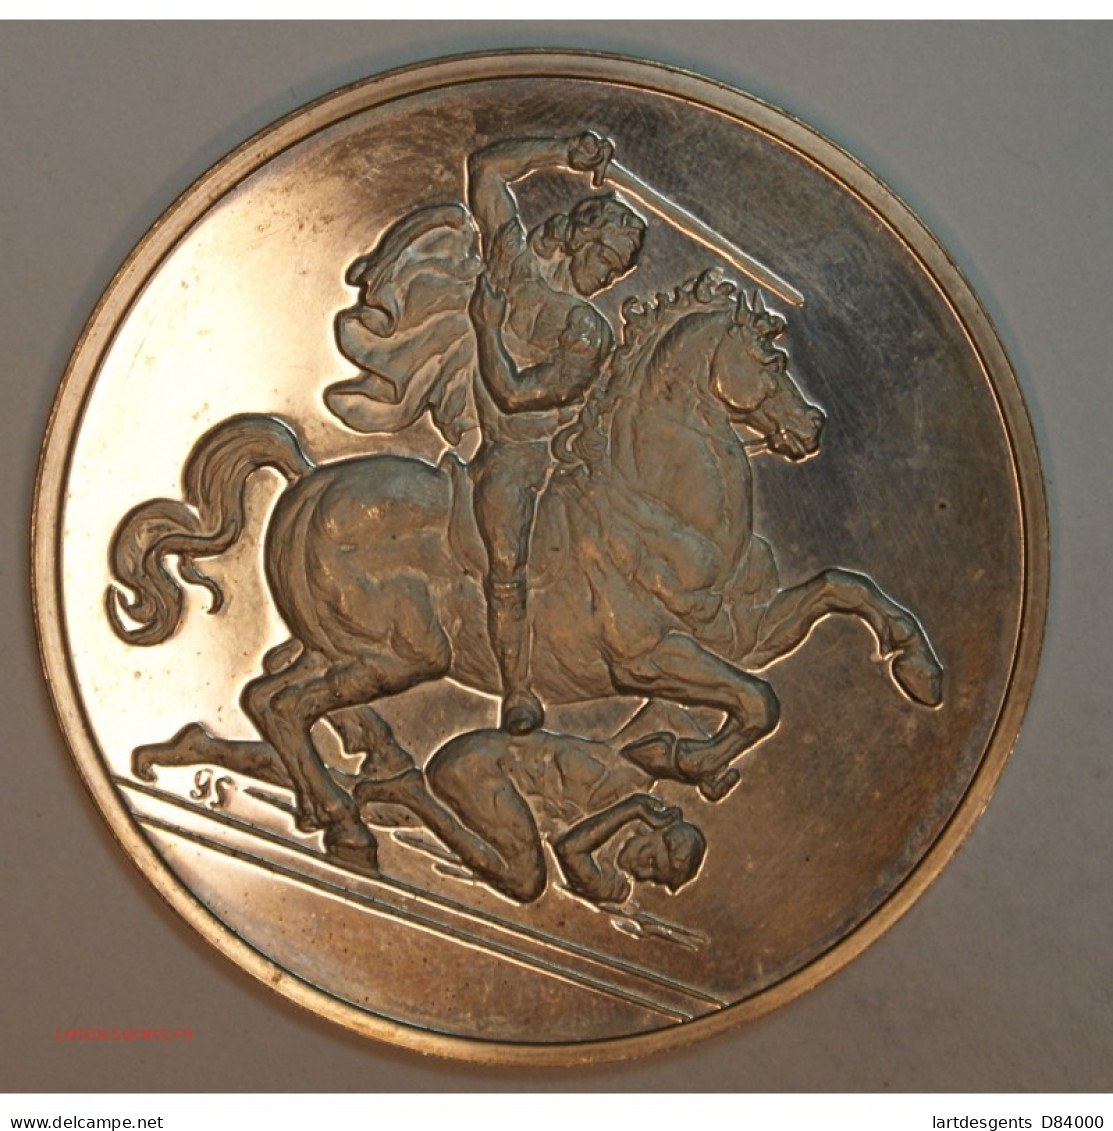 Médaille Argent 1er TITRE- CAVALIER ATTAQUANT UN ENNEMI..., Lartdesgents.fr - Monarchia / Nobiltà